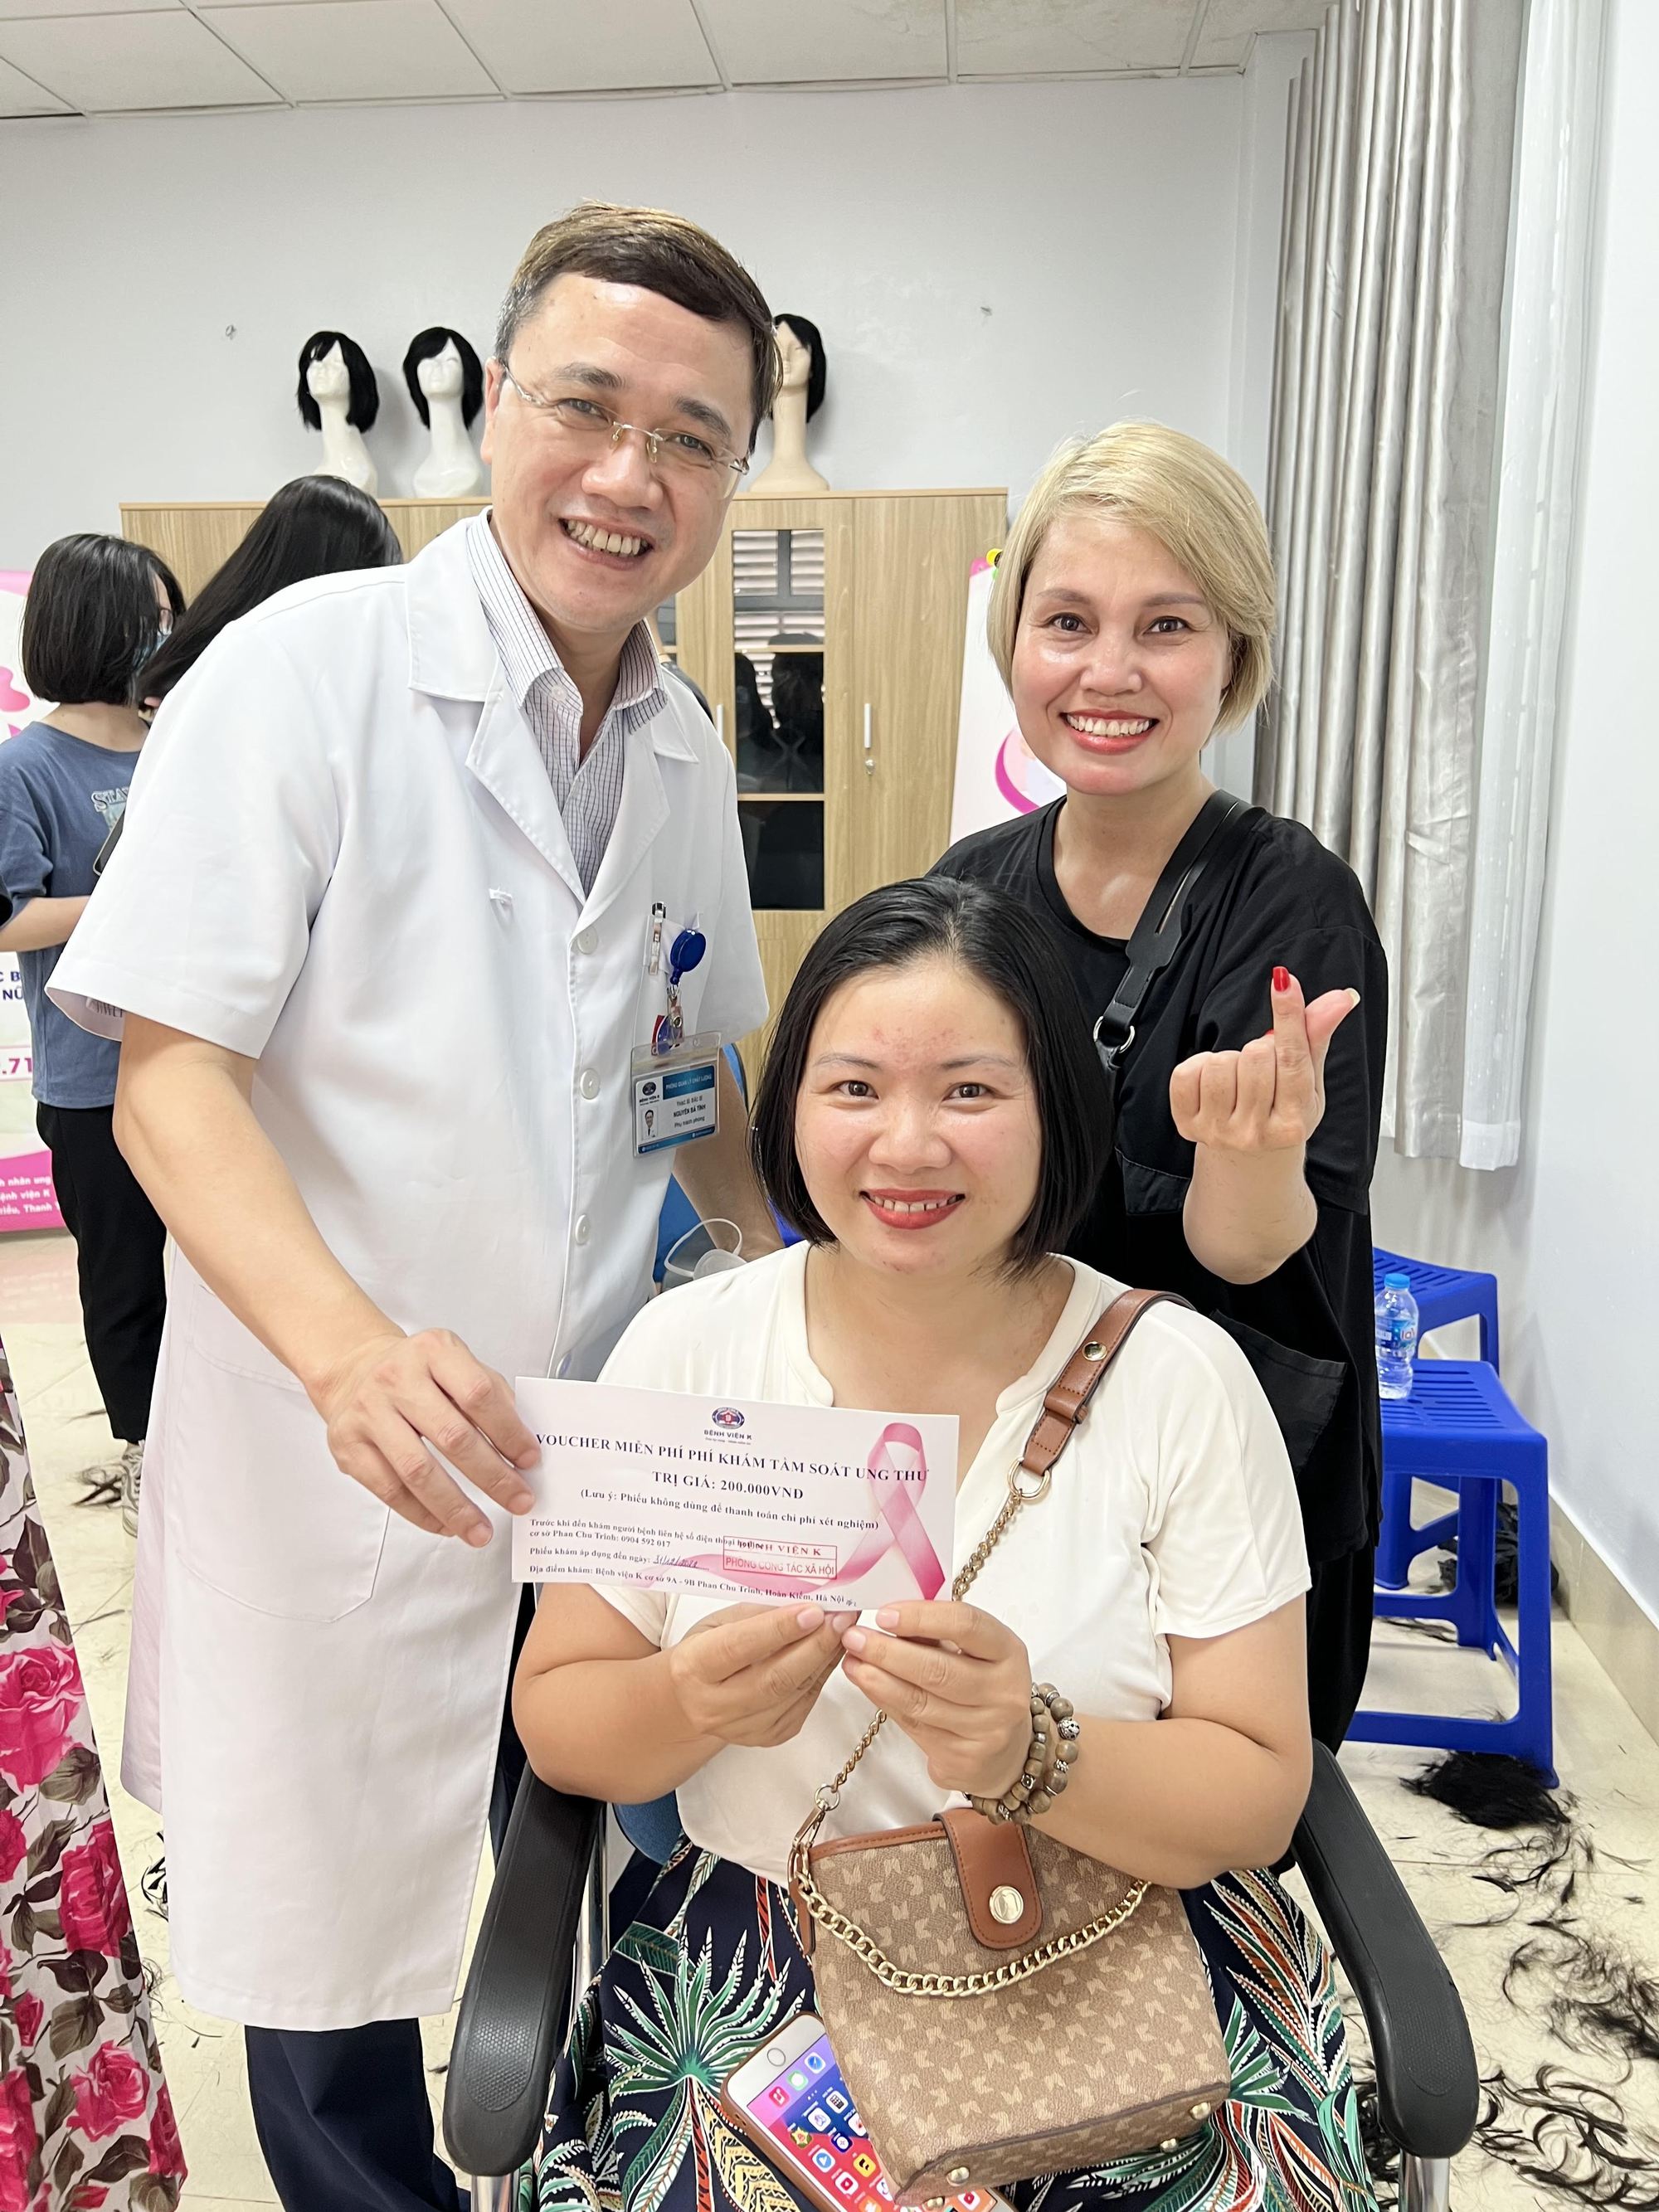  Chị Hồng Vịnh- cán bộ Văn phòng Bộ Y tế và niềm vui sau khi hiến 20cm mái tóc cho người bệnh ung thư